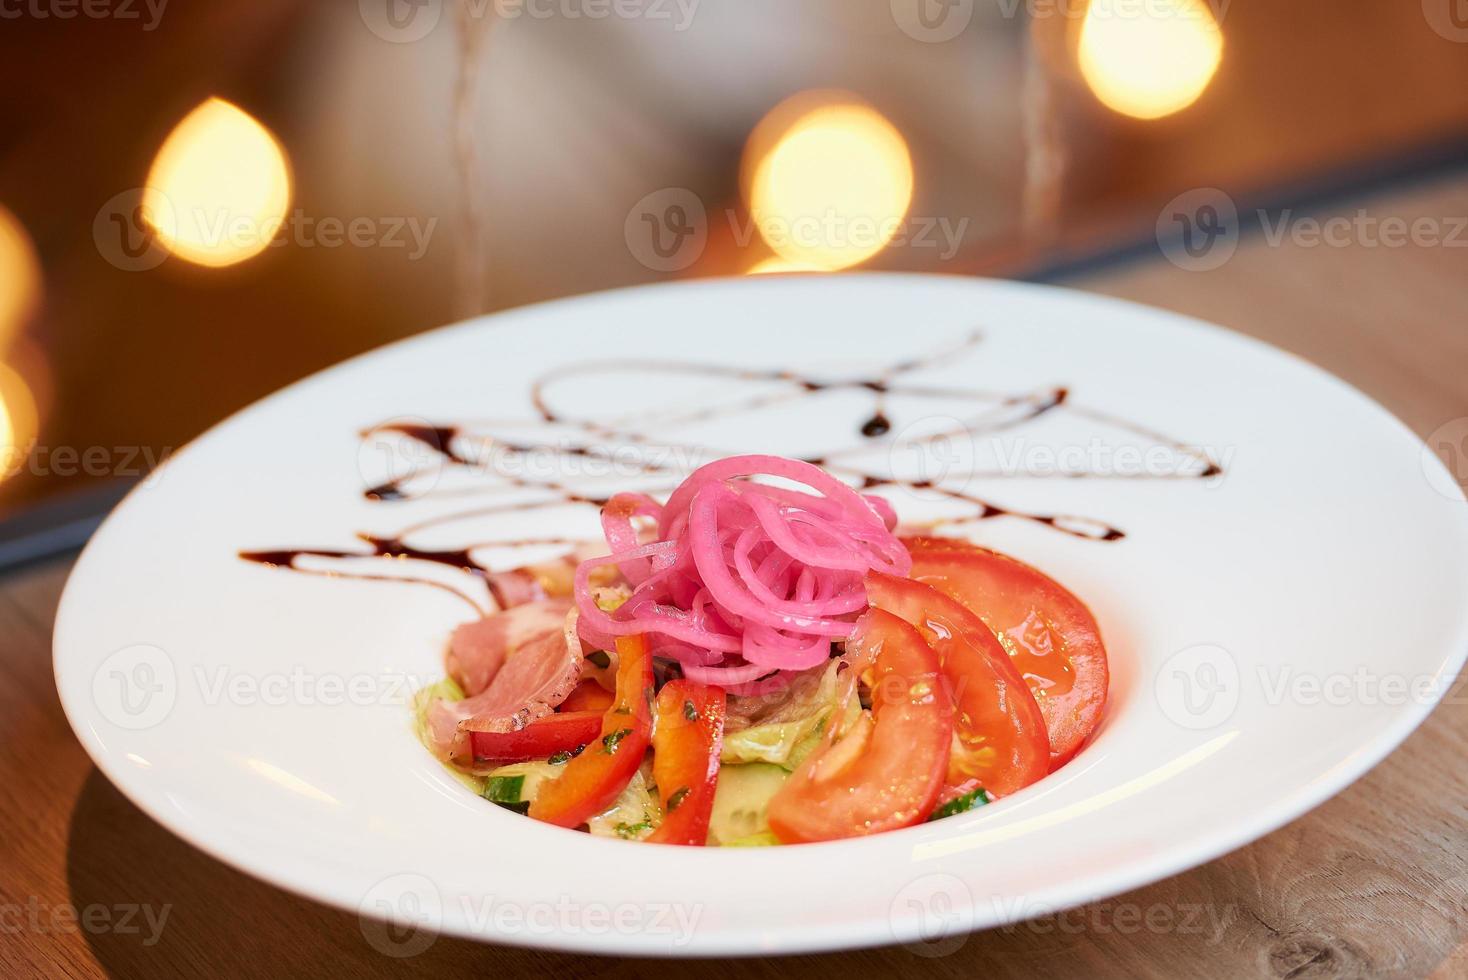 ett foto av en mynta och dolendwitz sallad i en restaurang på bordet